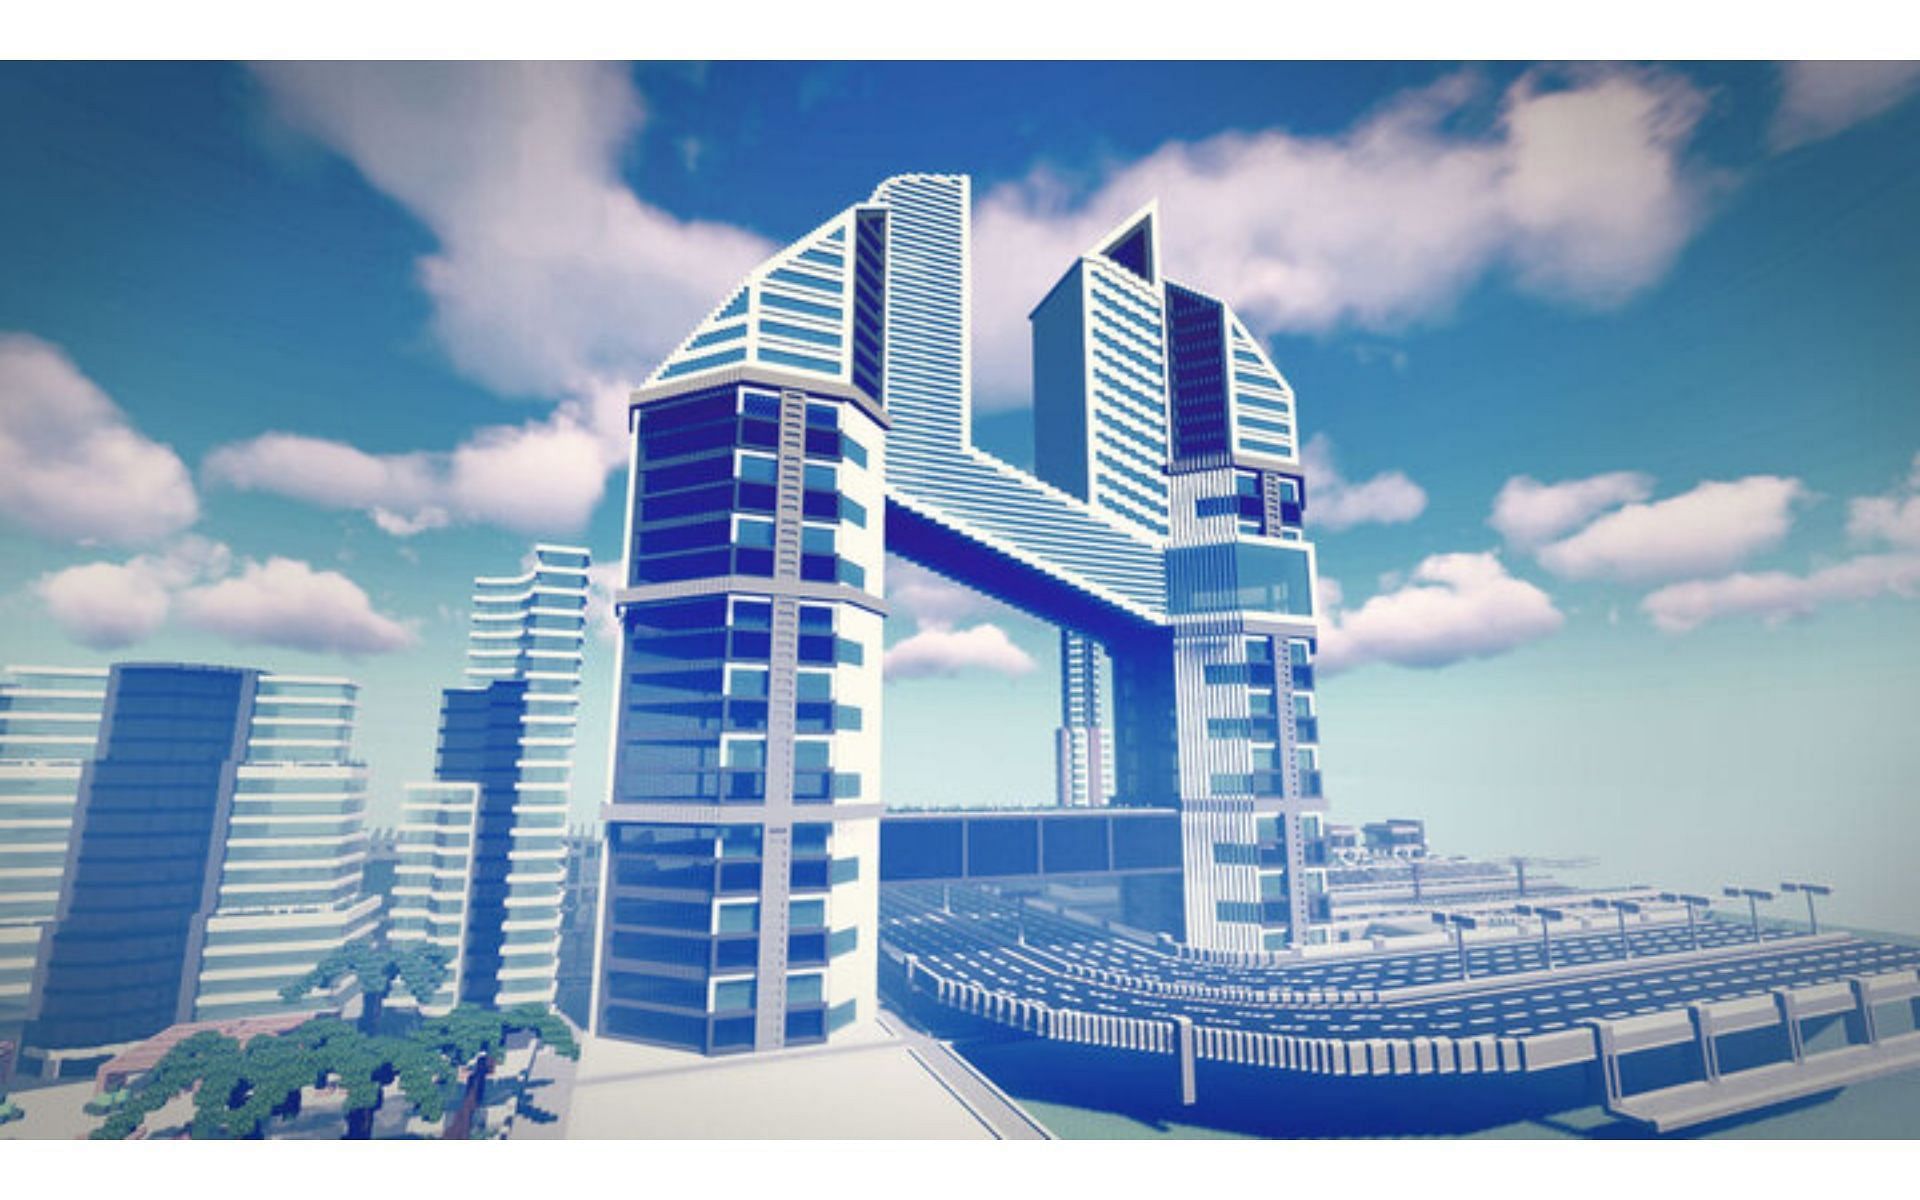 A futuristic skyscraper build (Image via Planet Minecraft)